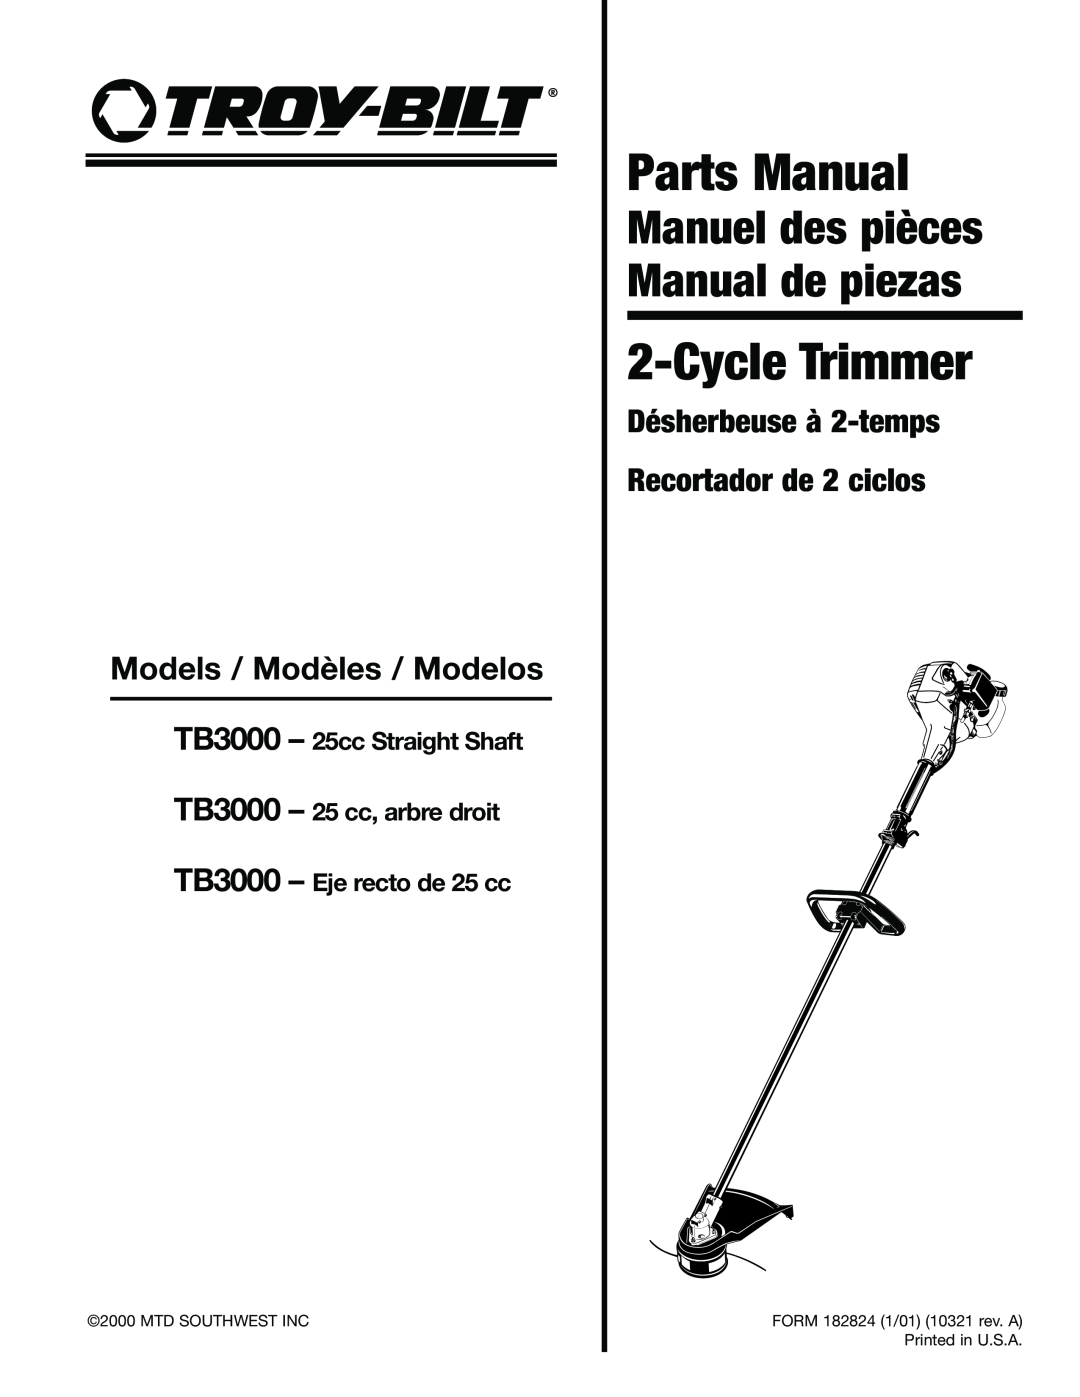 Troy-Bilt ARBRE DROIT manual Désherbeuse à 2-temps Recortador de 2 ciclos, Models / Modèles / Modelos, Parts Manual 